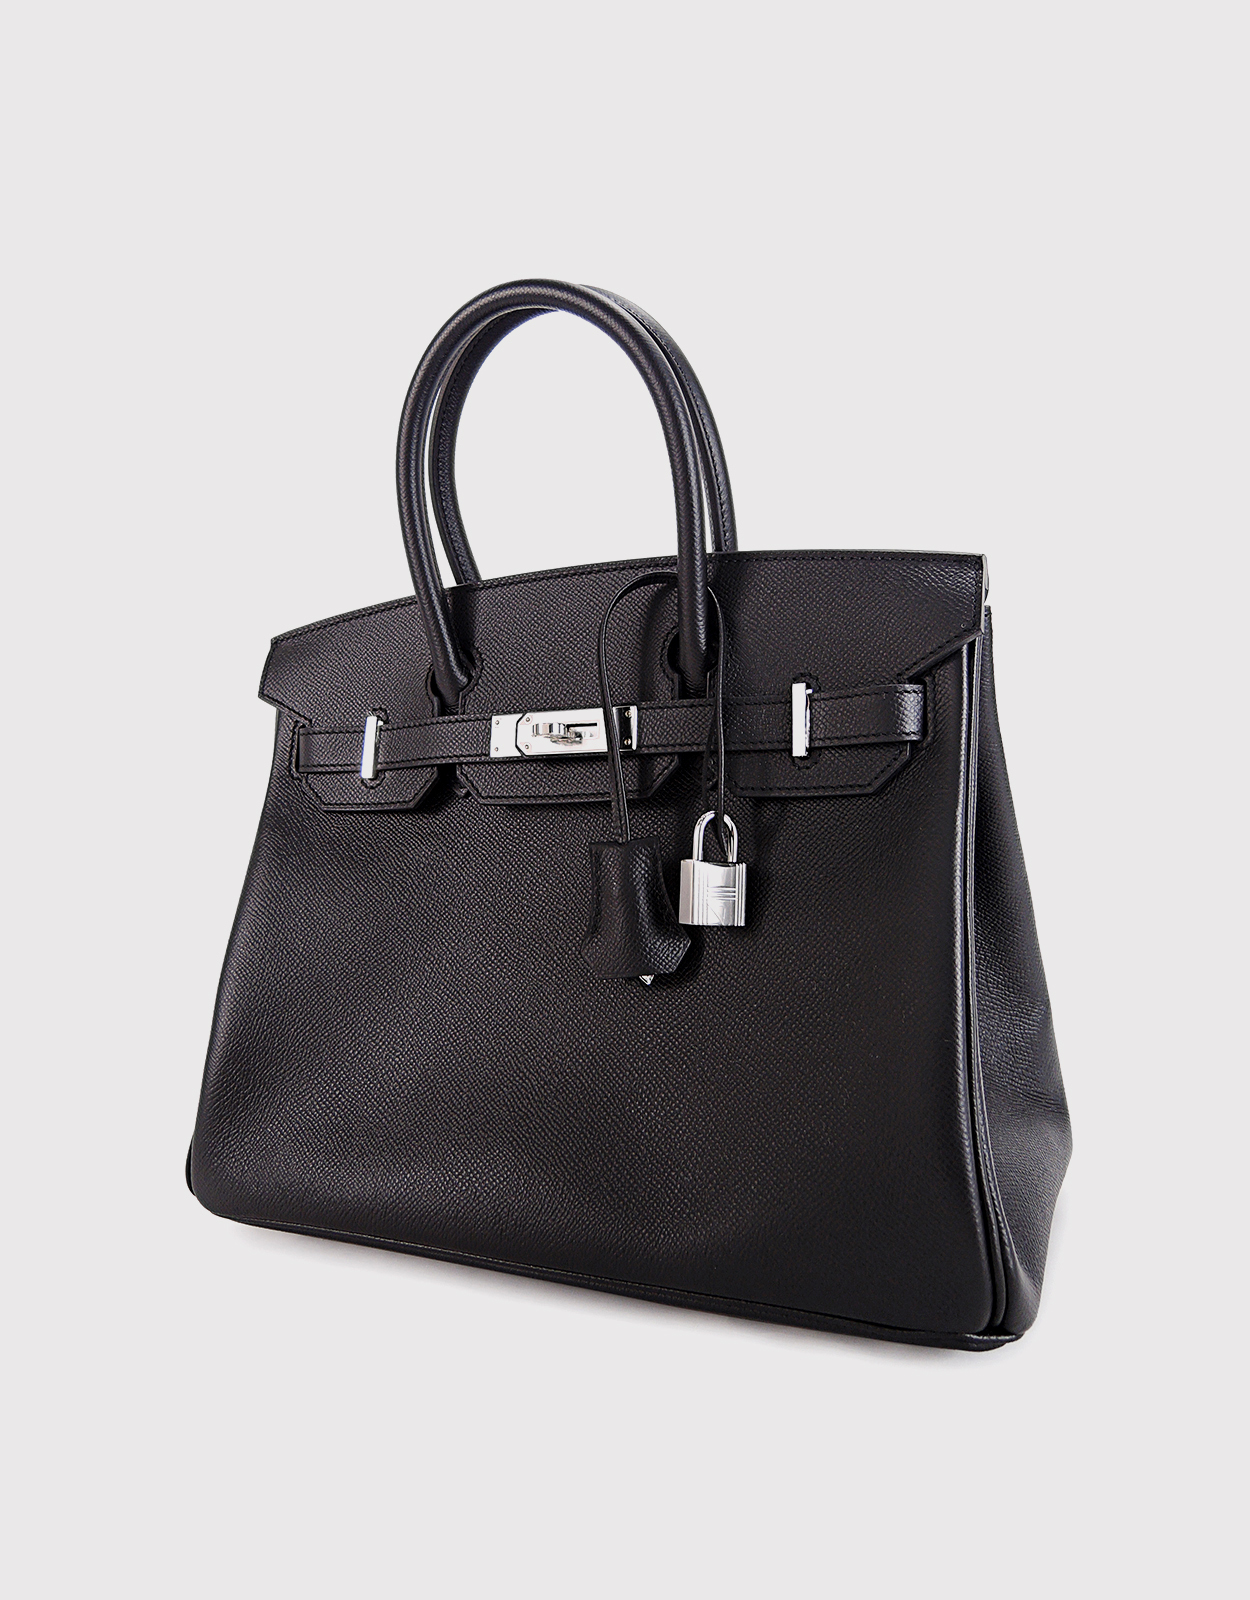 Shop Women's Hermes Birkin Bag 30cm in Black Togo Leather